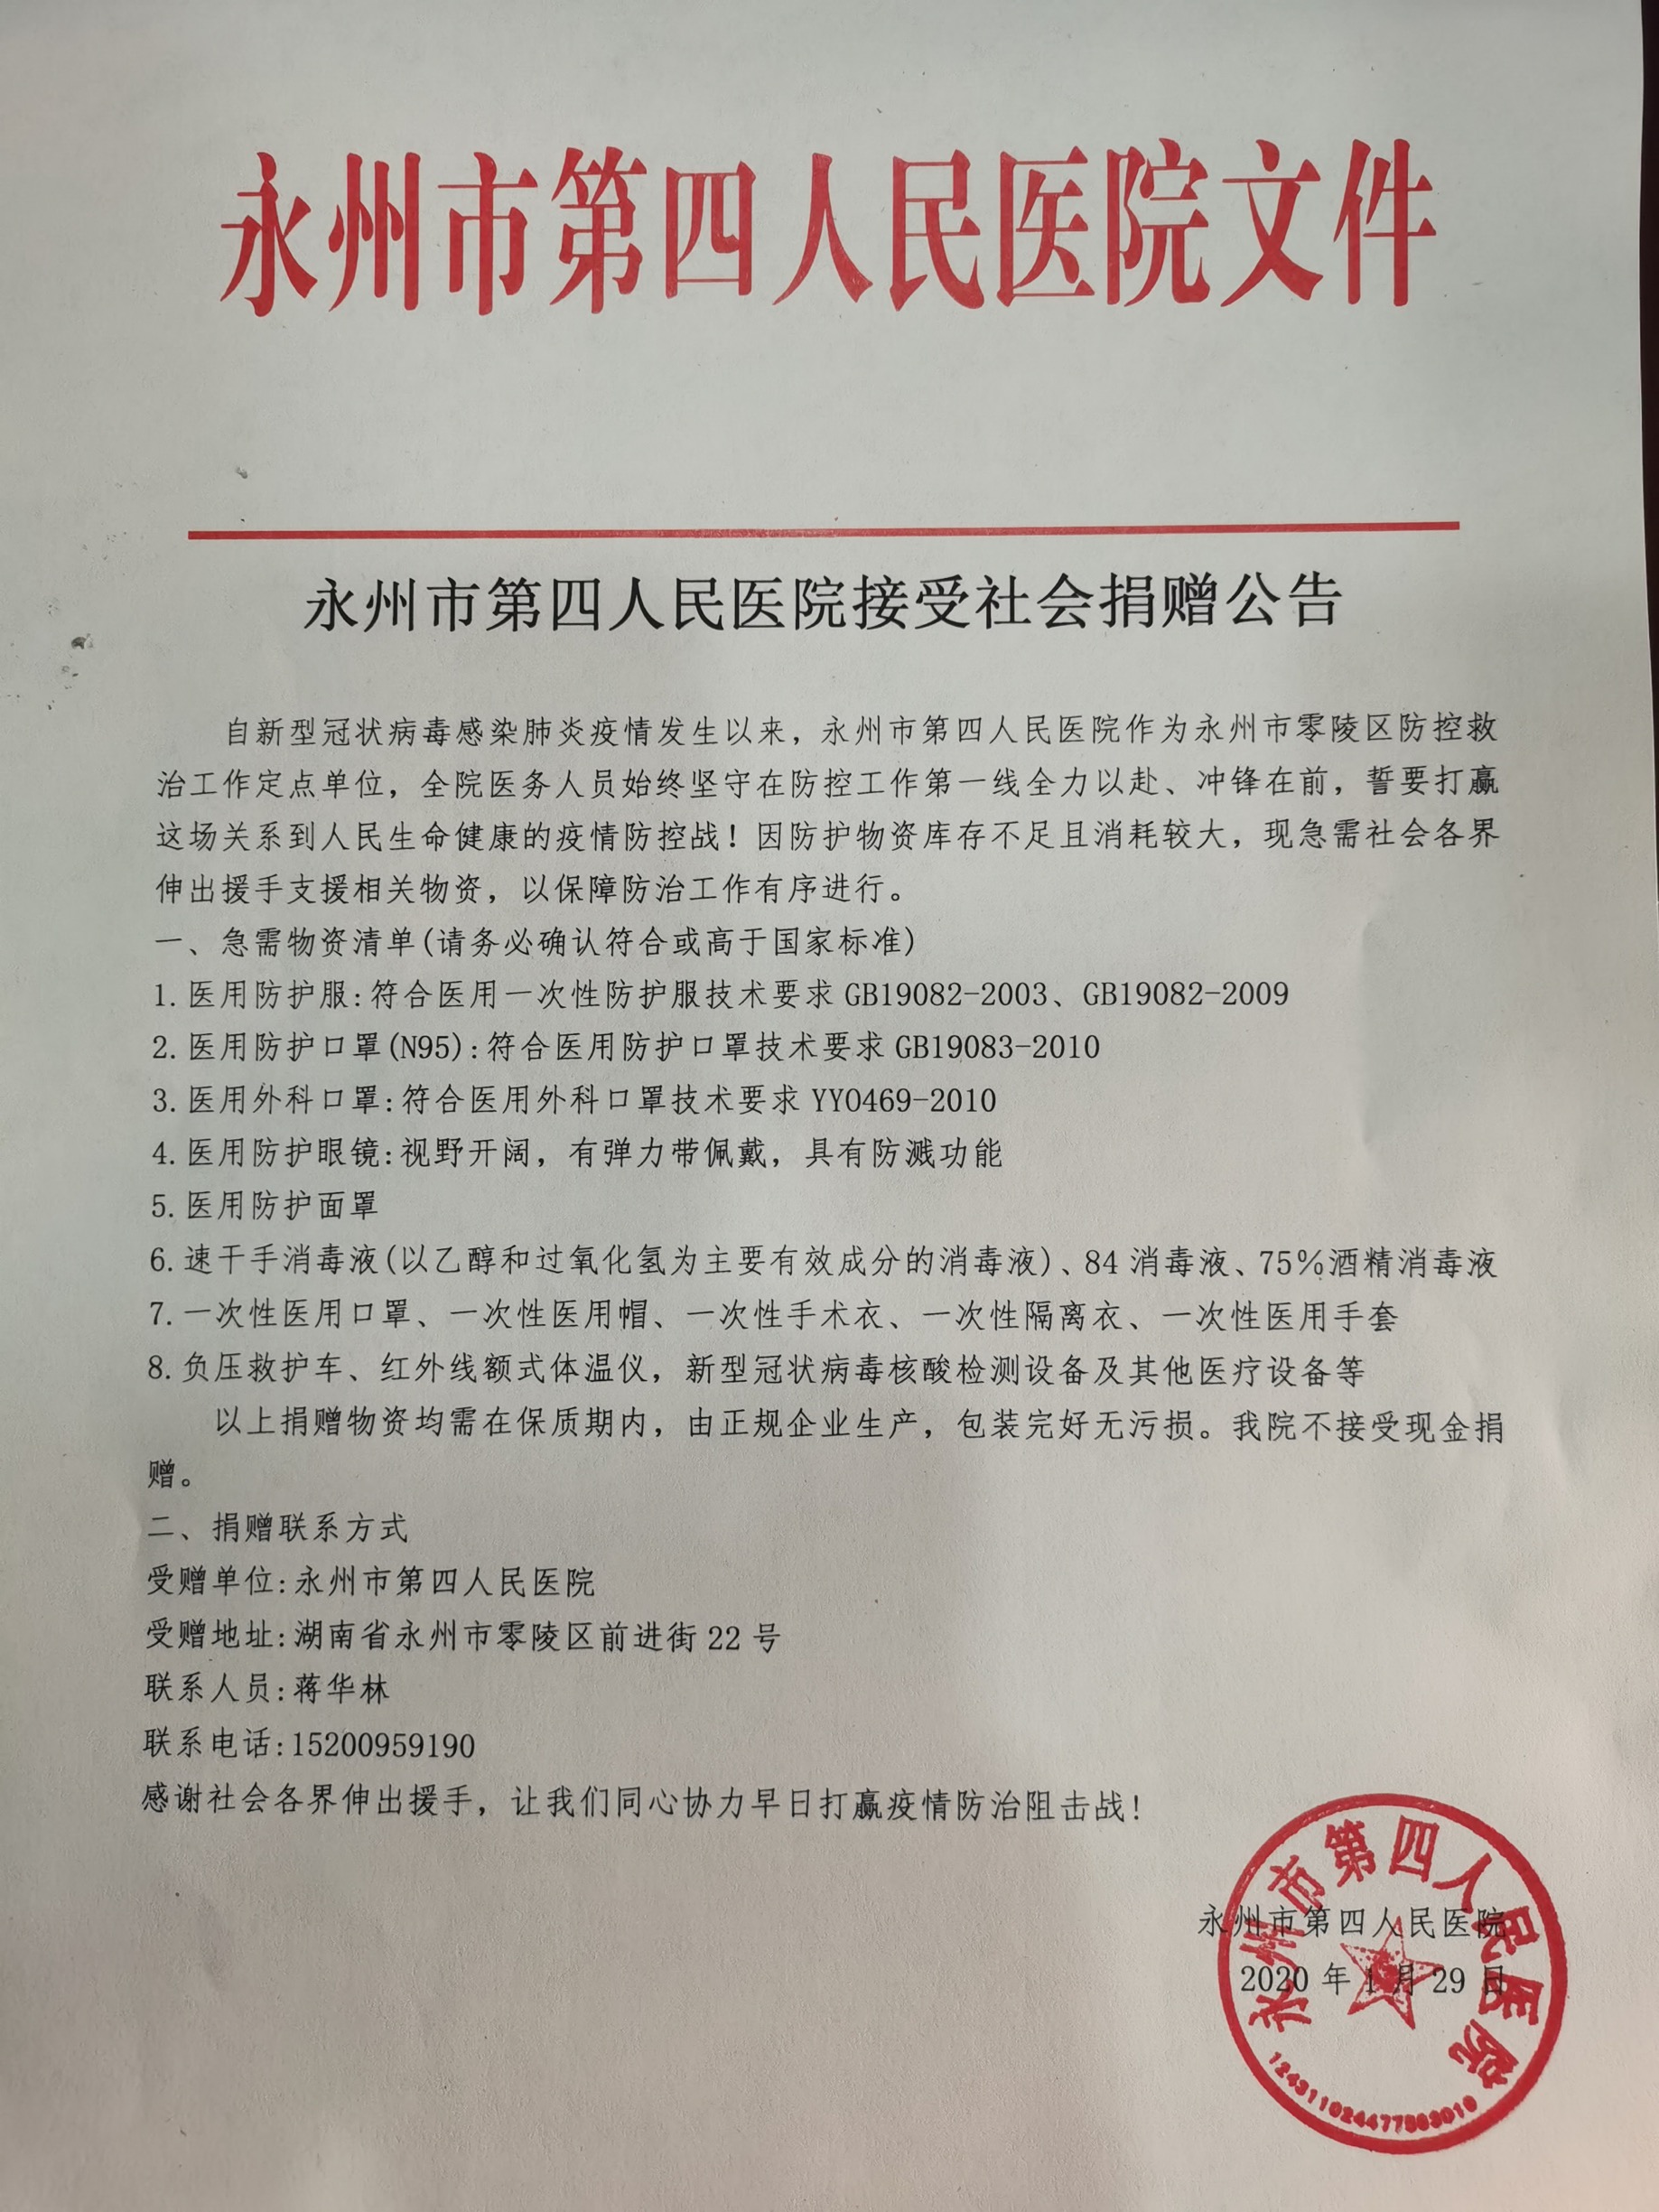 永州市第四人民医院接受社会捐赠公告